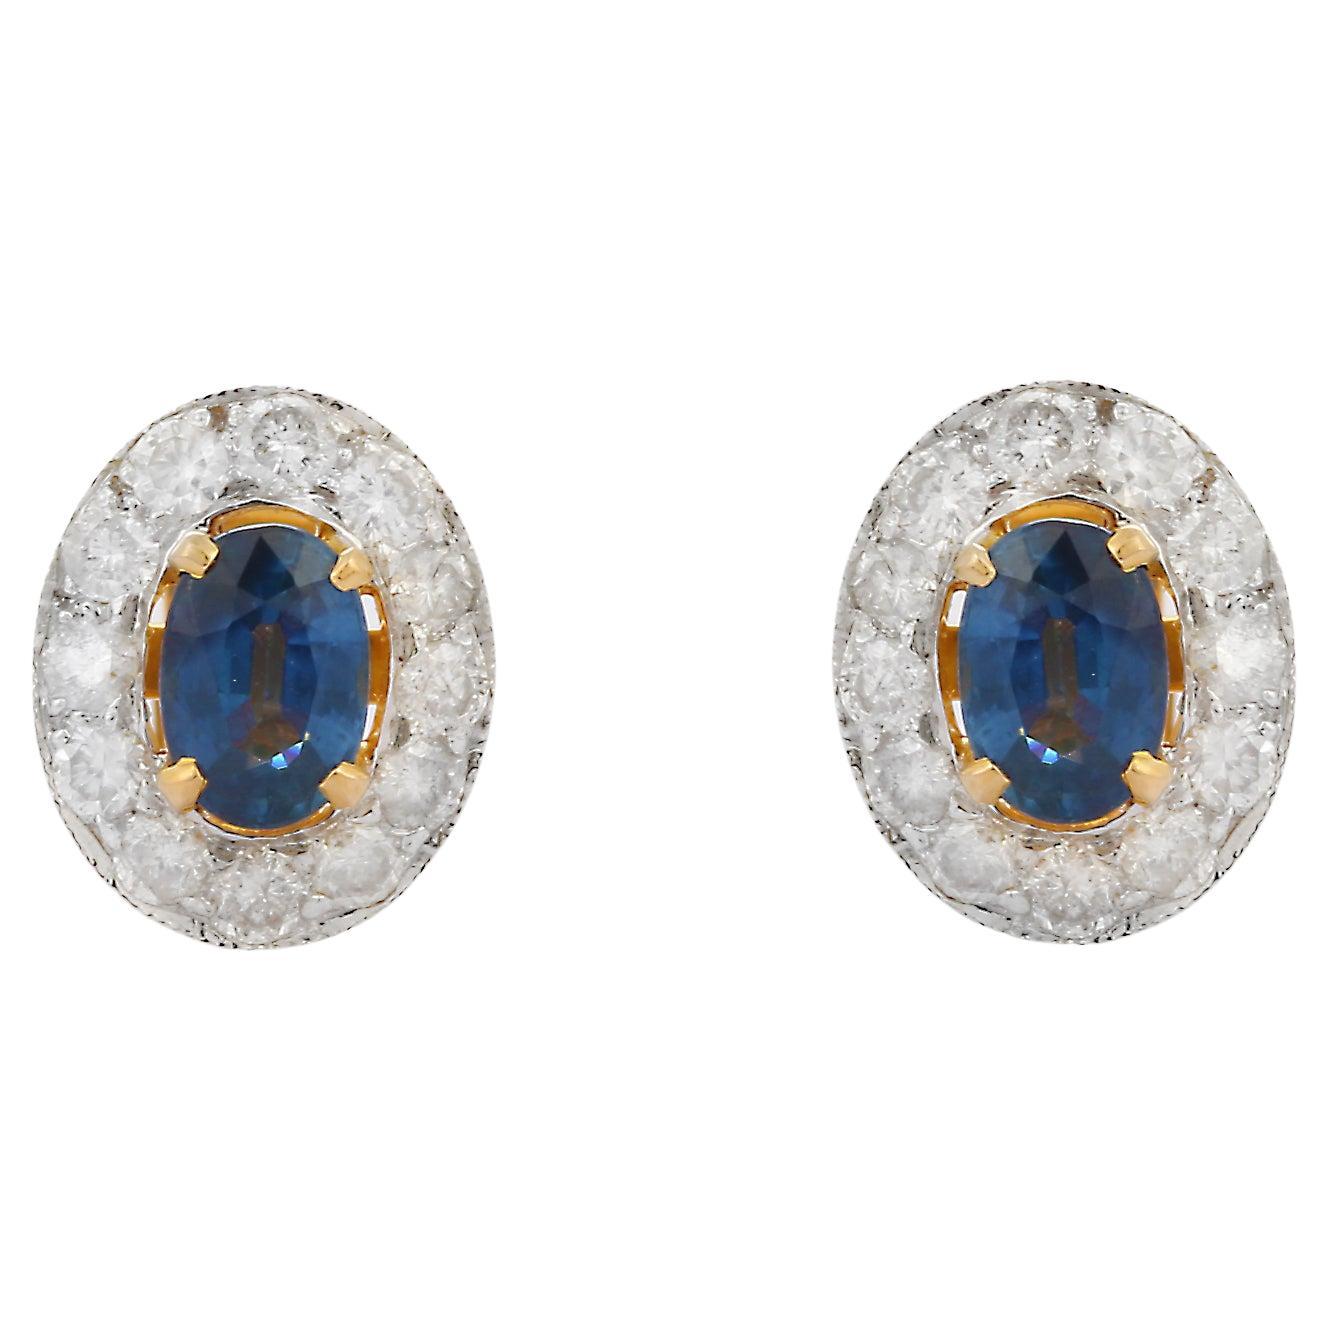 Clous d'oreilles en or jaune 18 carats avec saphir bleu naturel de 1,25 carat et halo de diamants